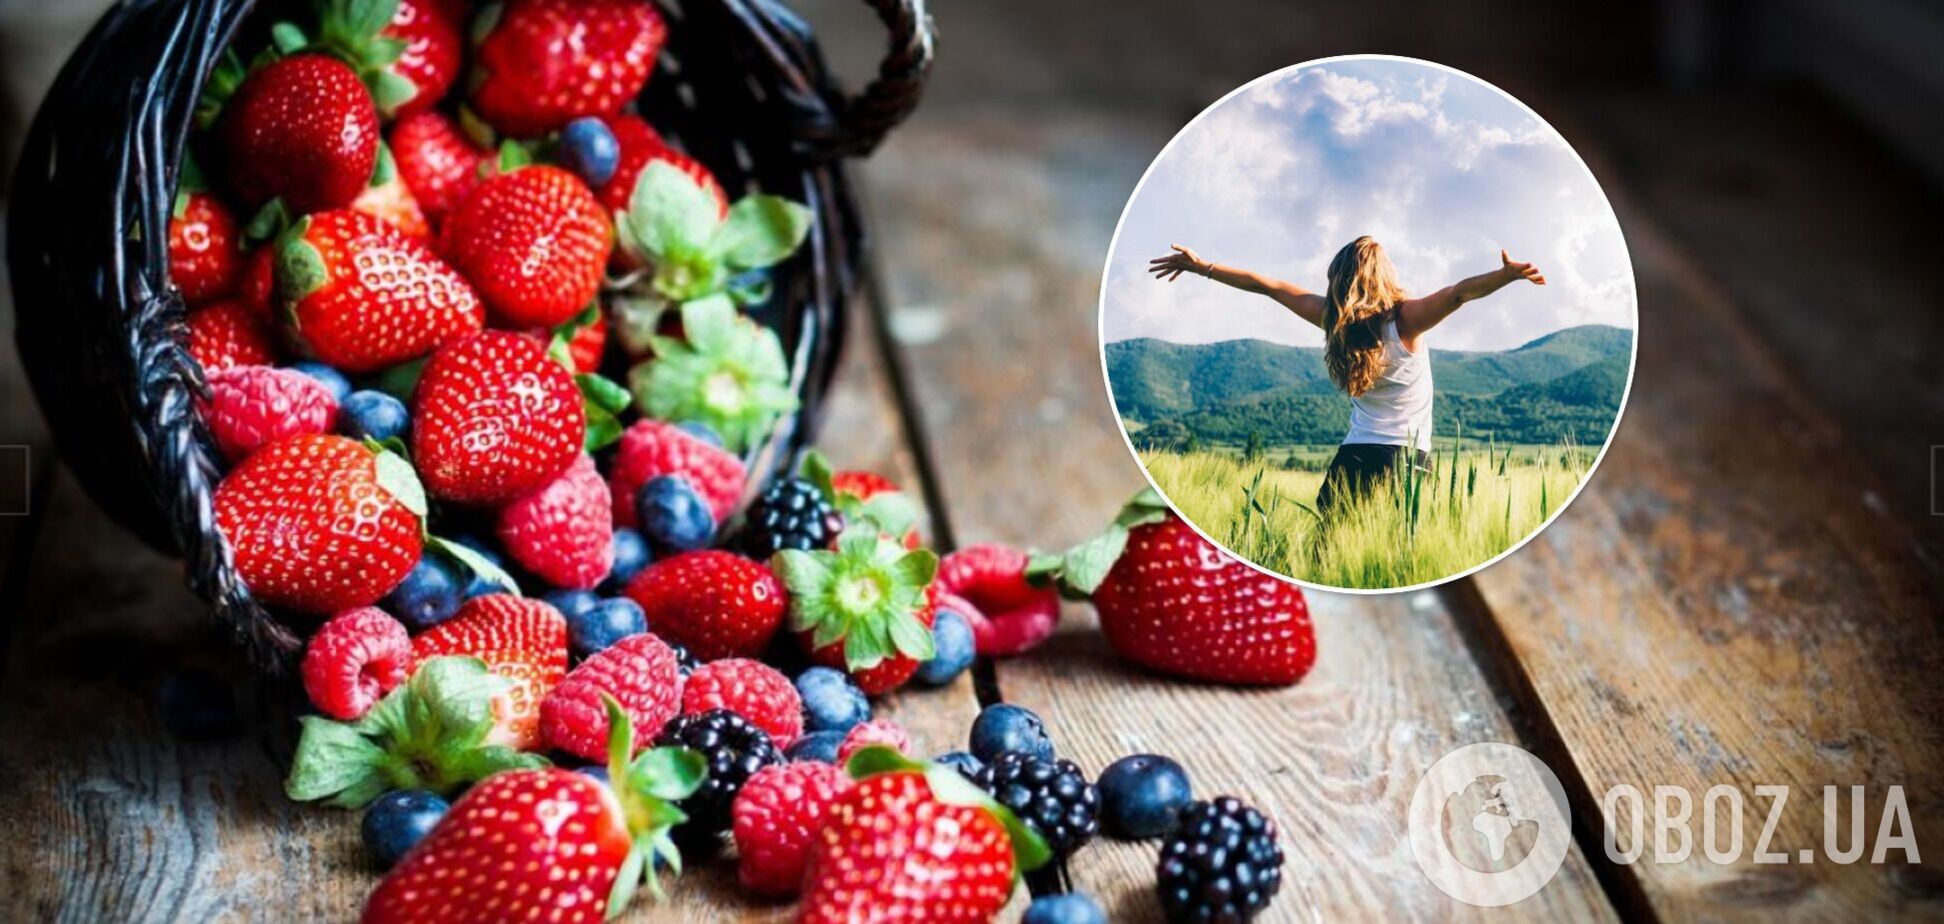 В Минздраве назвали 9 сезонных фруктов, которые стоит добавить в рацион: чем полезны